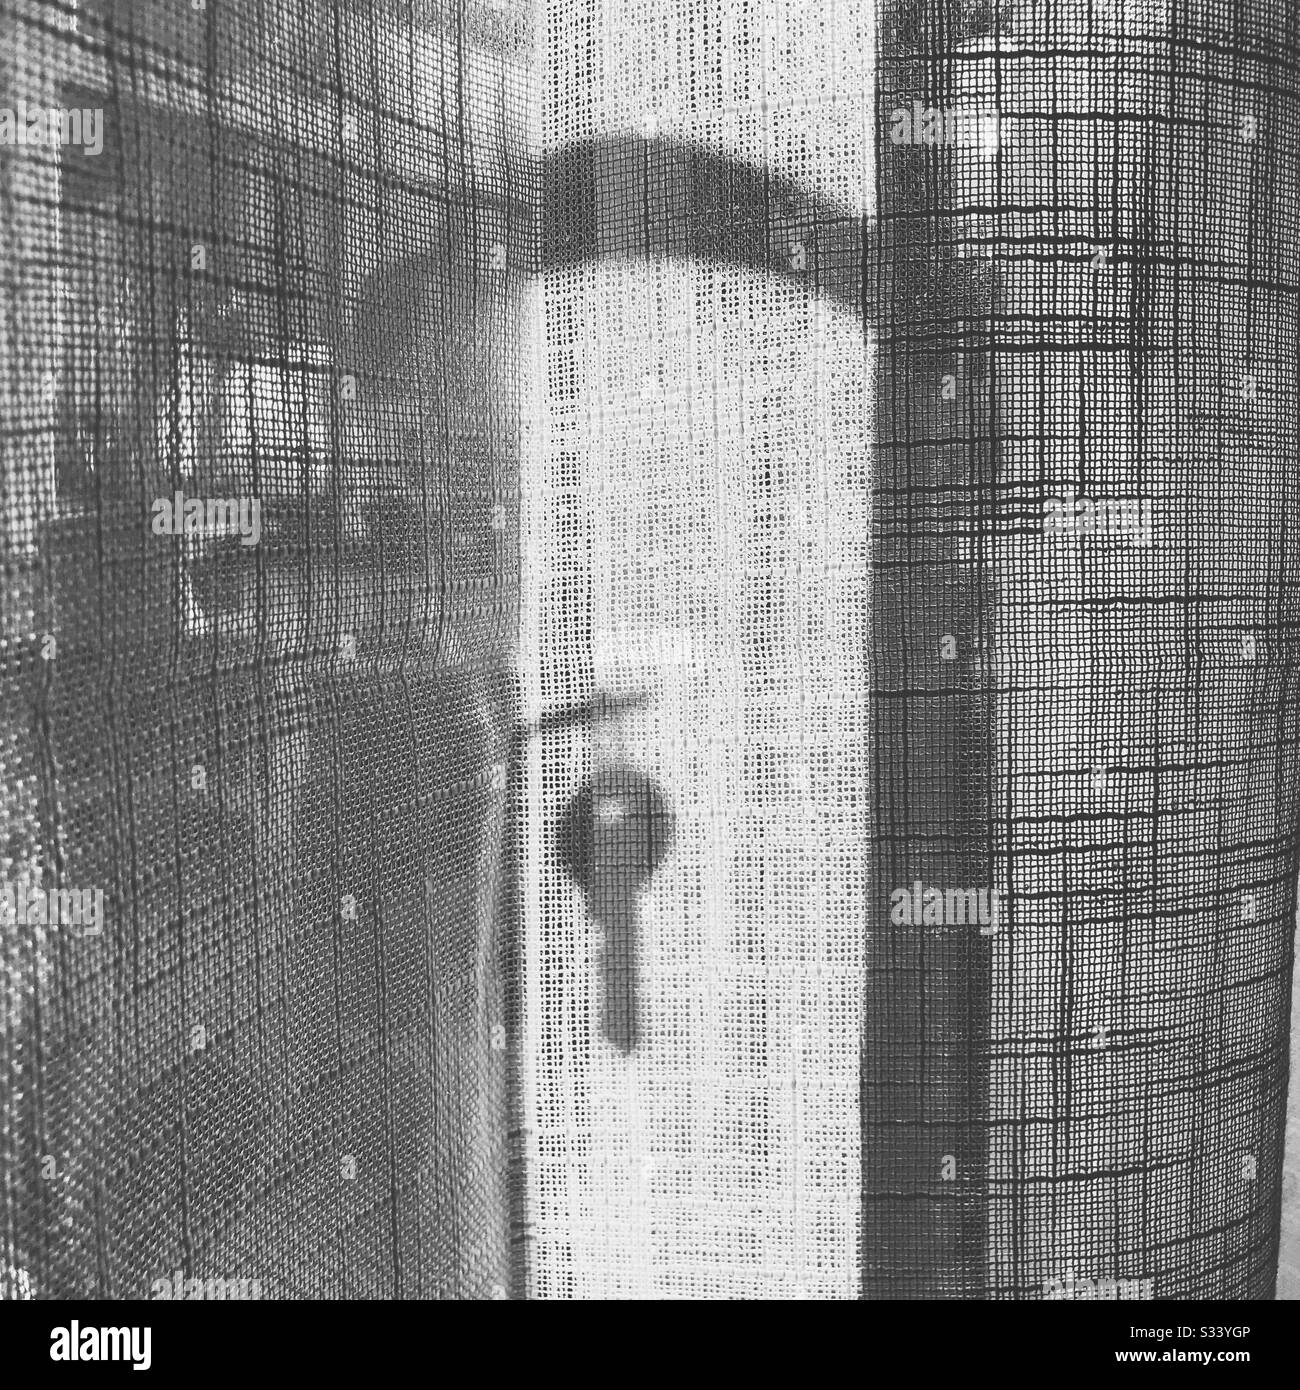 Una llave suspendida de una cerradura en la sombra silueta detrás de una cortina de malla de gasa blanca frente a las puertas francesas Foto de stock